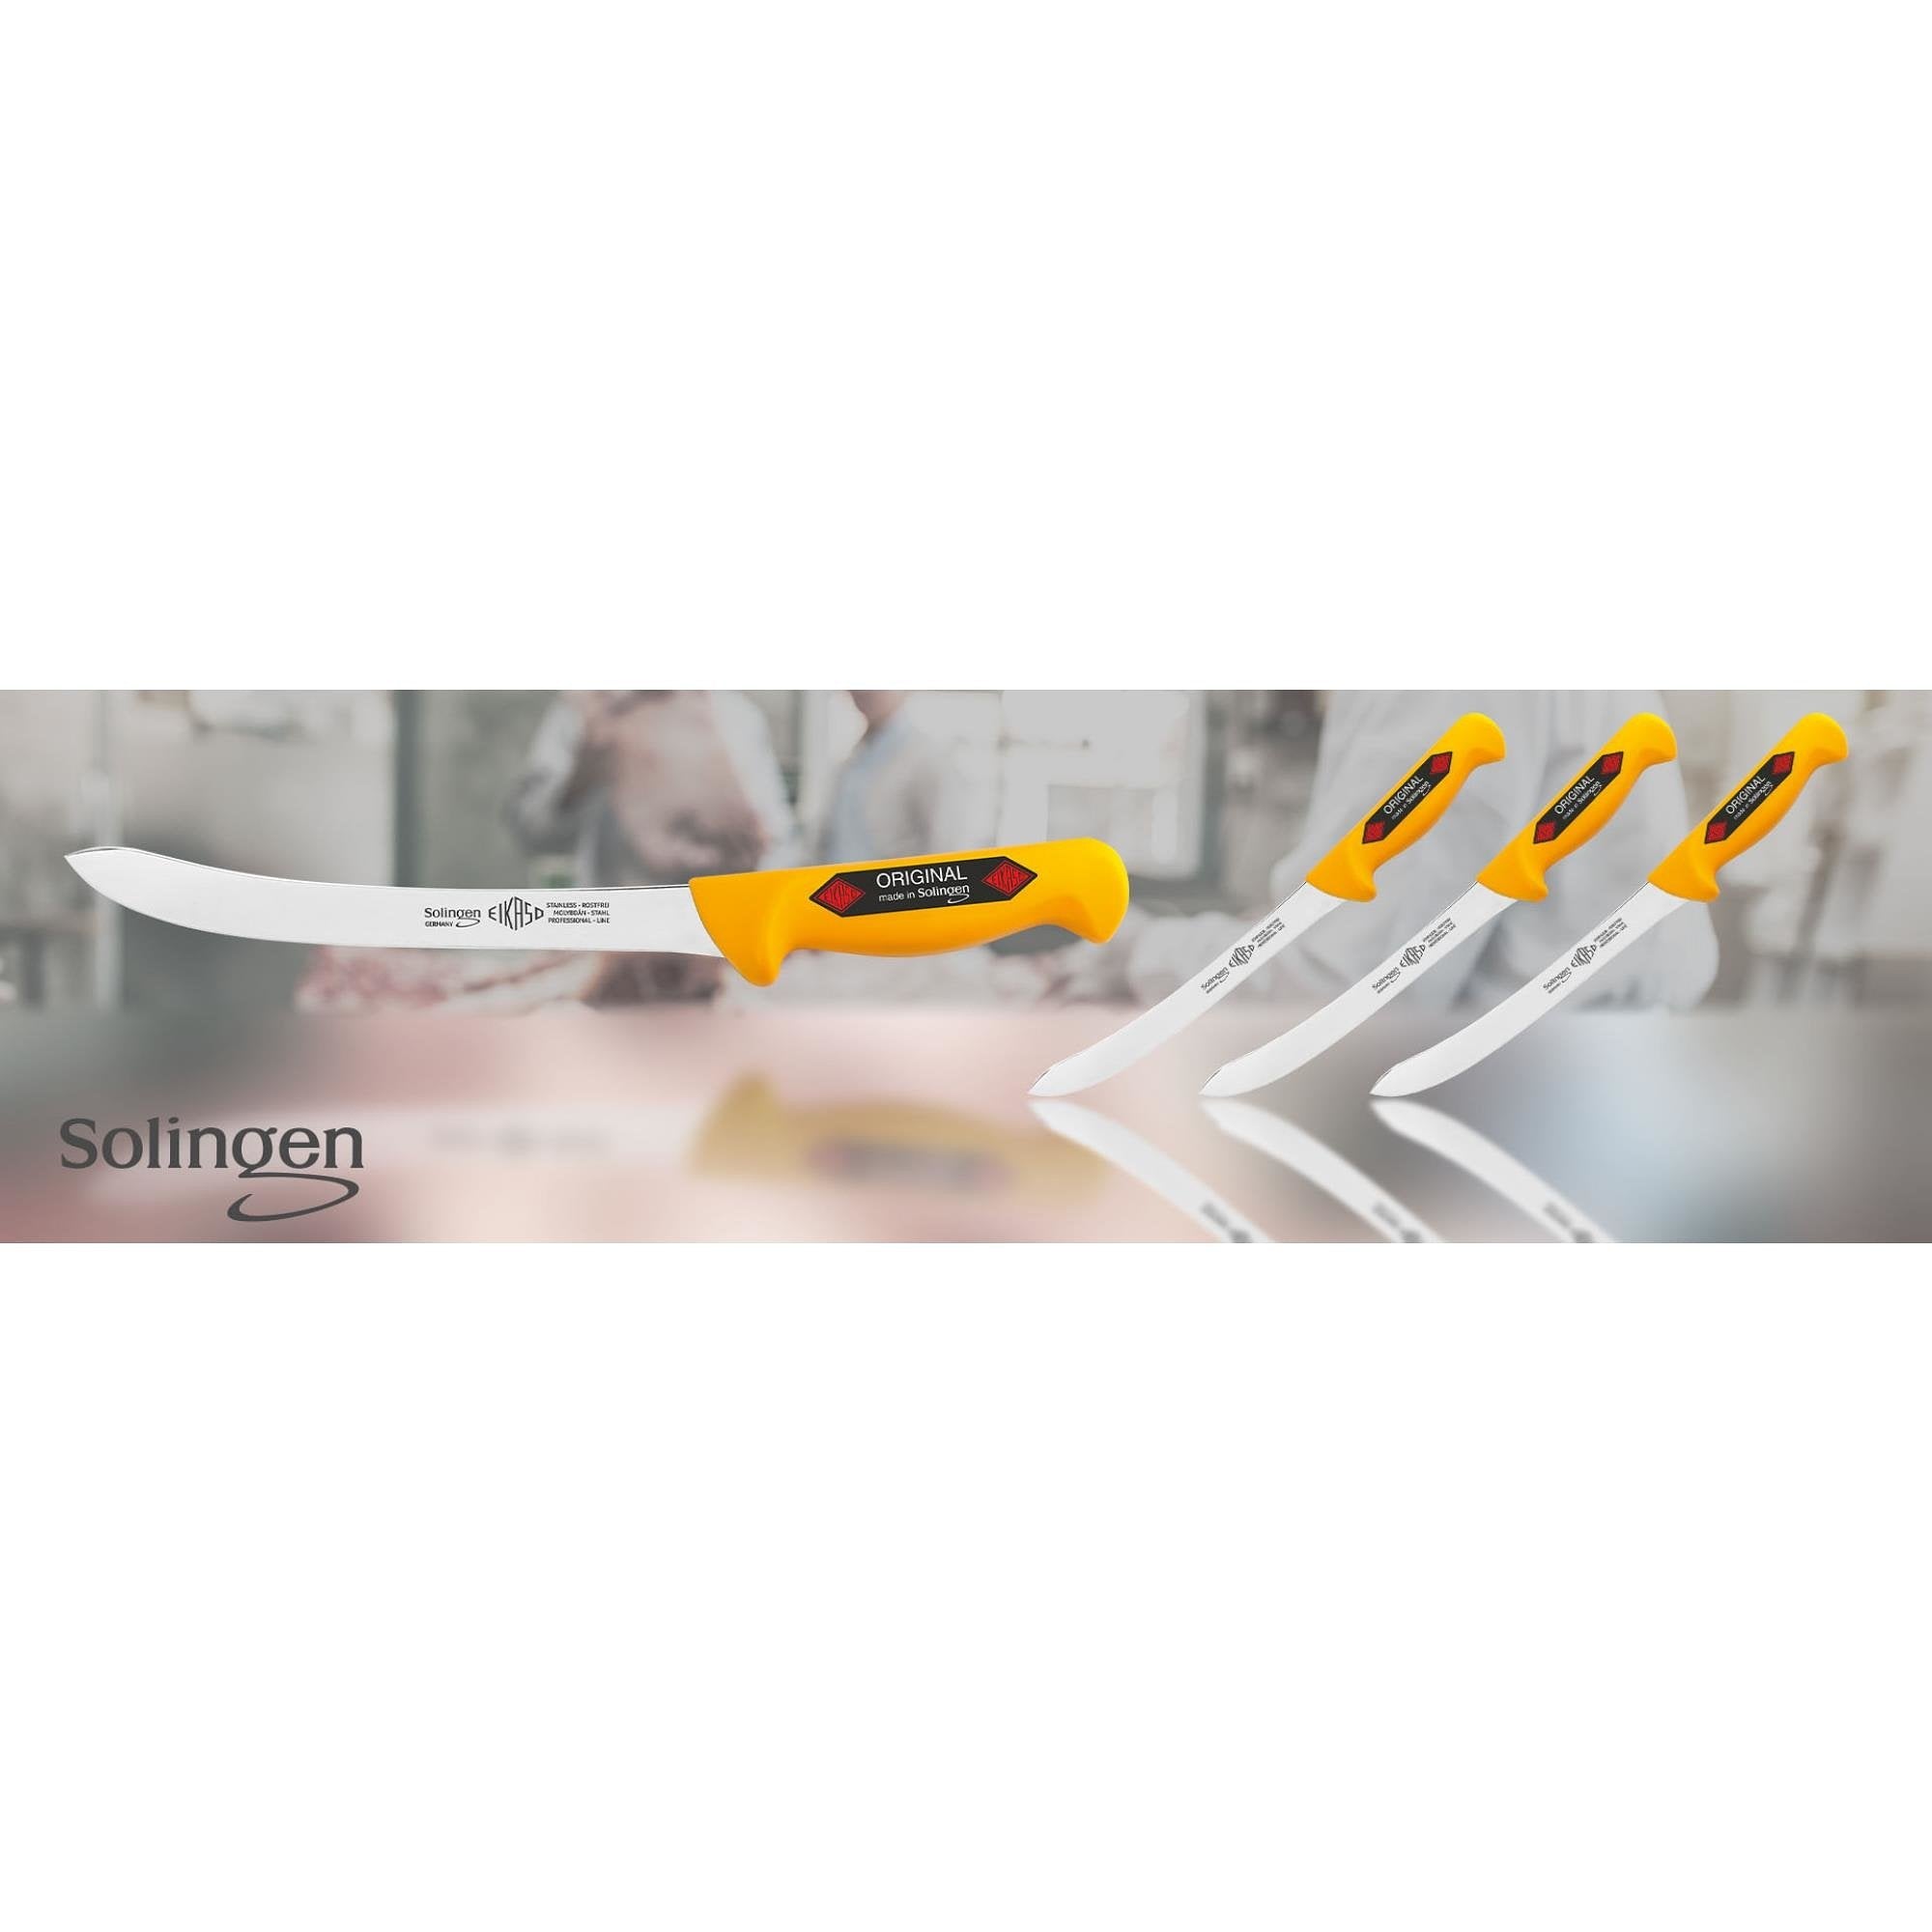 Eikaso Solingen Flexibel 21 cm Fileermes - Precisie Snijden - Ergonomisch Geel Handvat